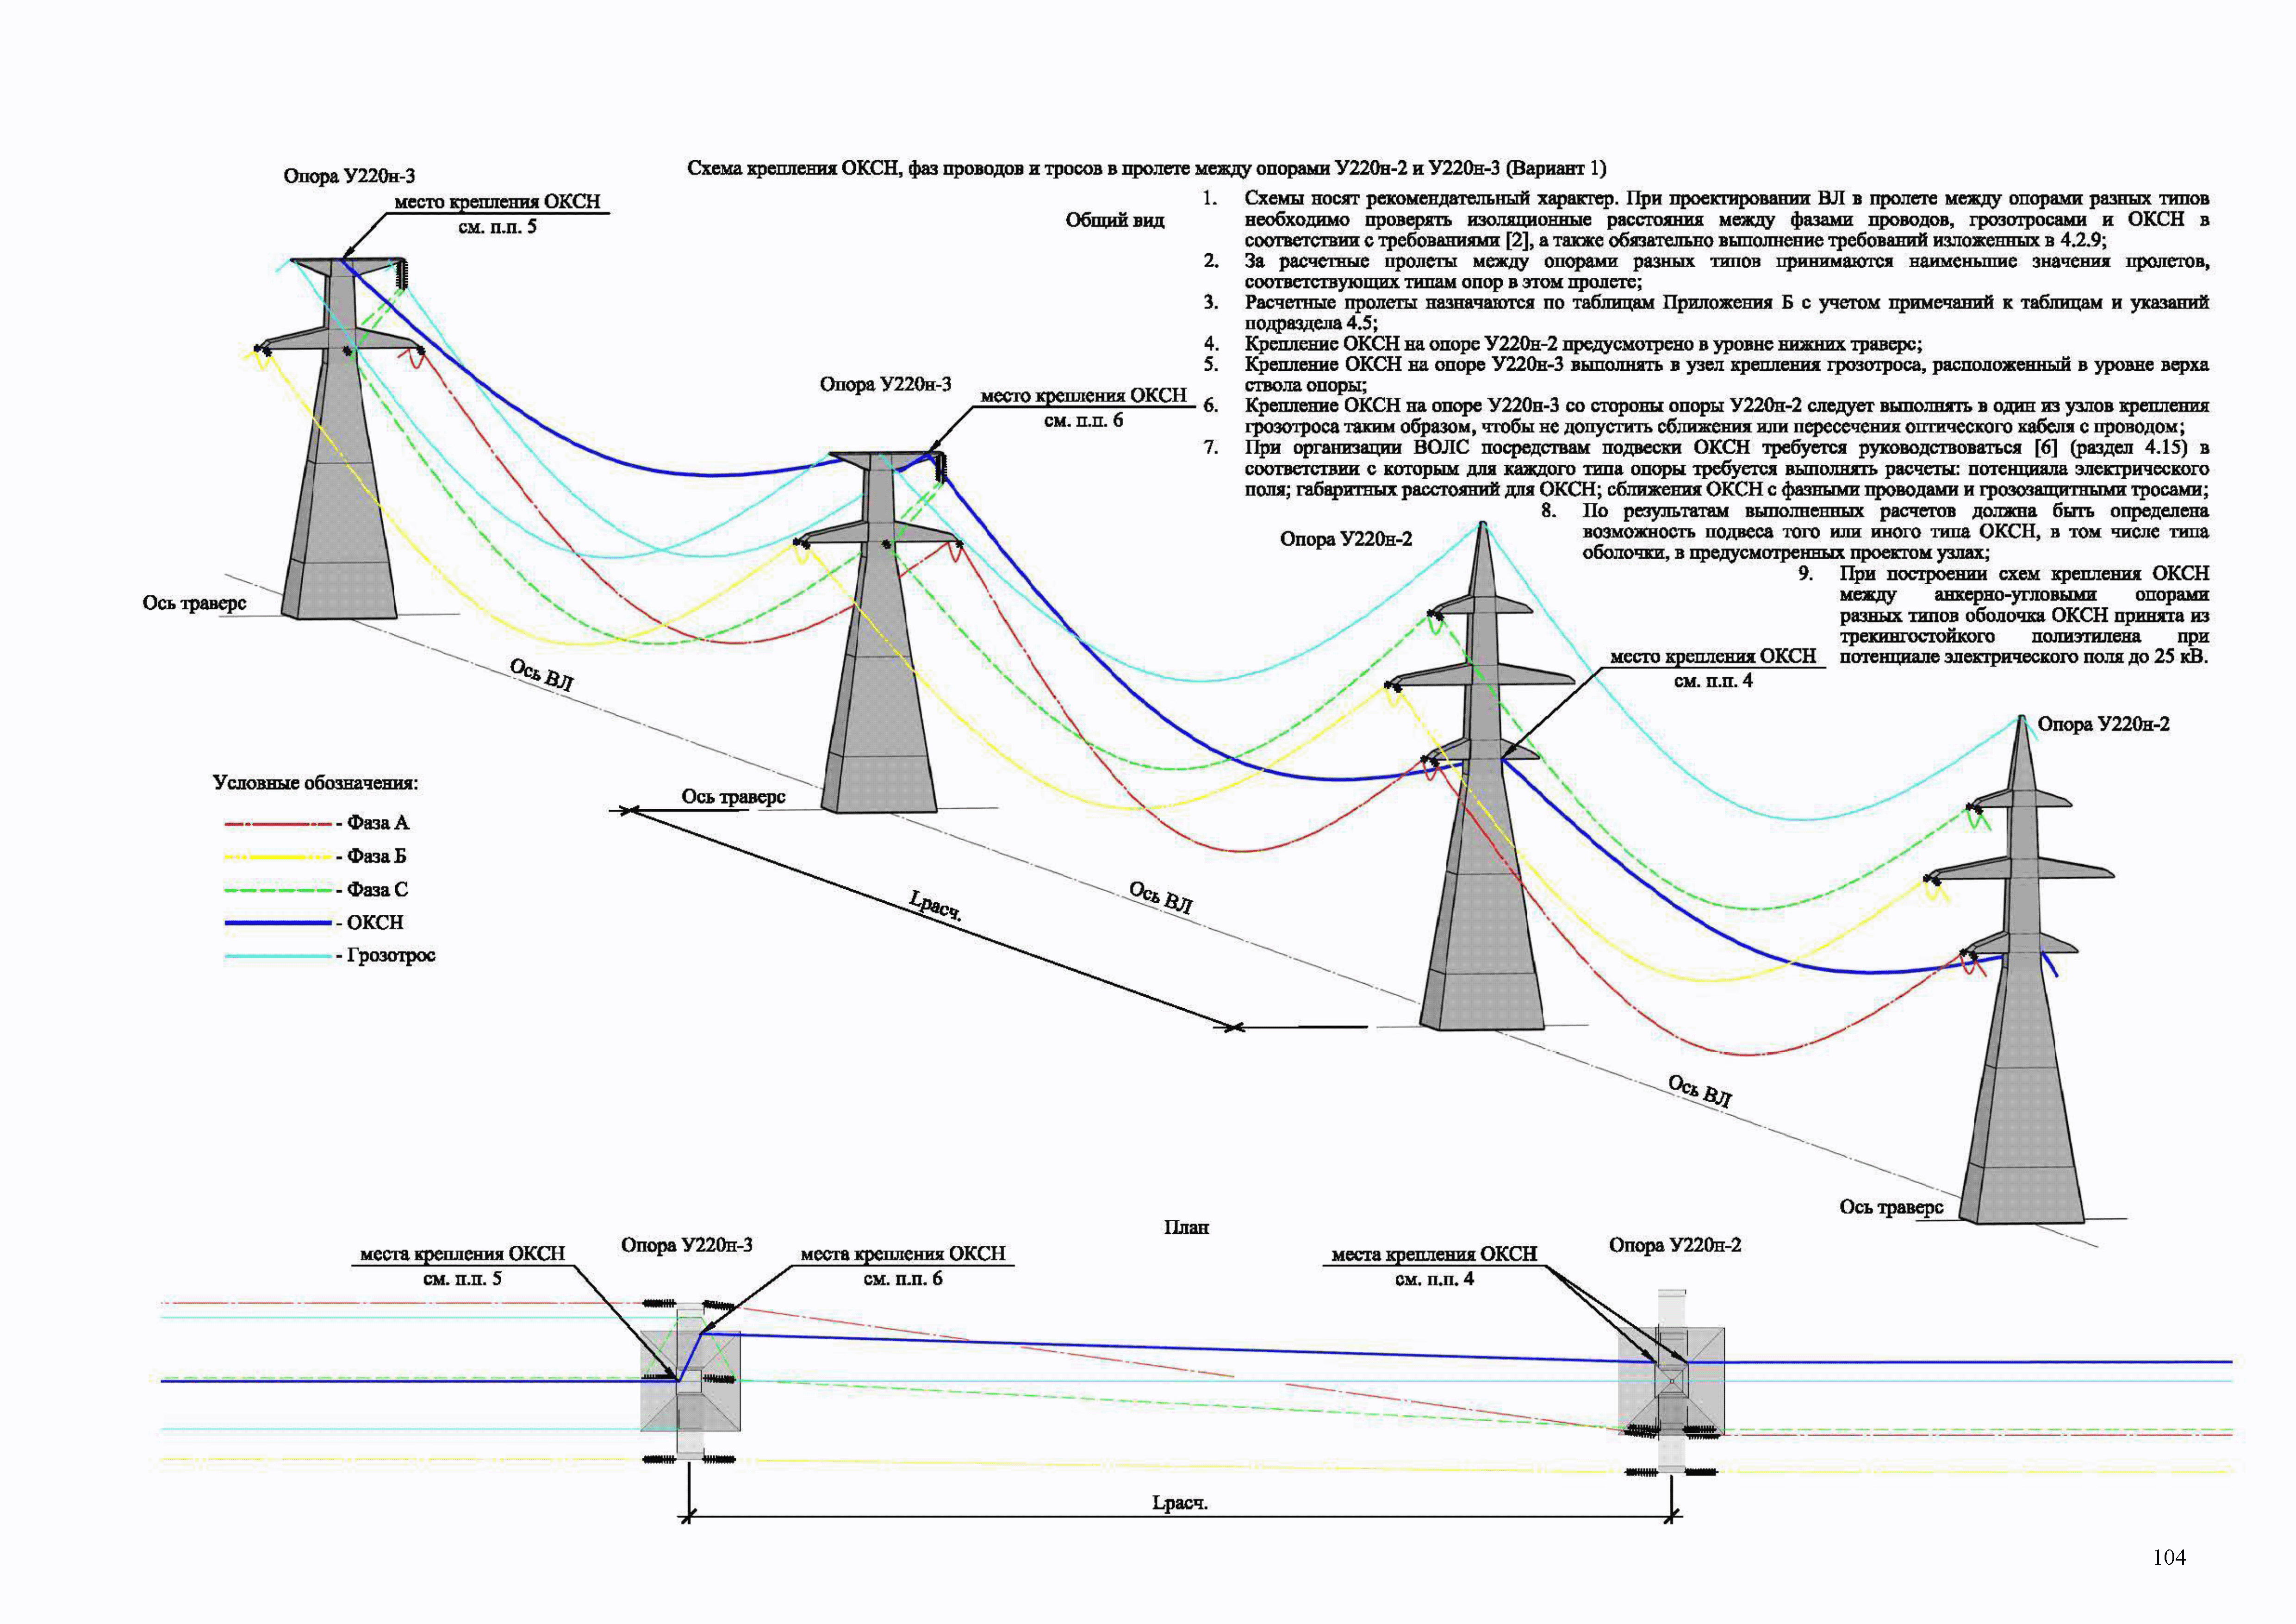 Расстояние между опорами и столбами лэп: нормы для линии электропередачи 10 кв, 110 кв, 35 кв